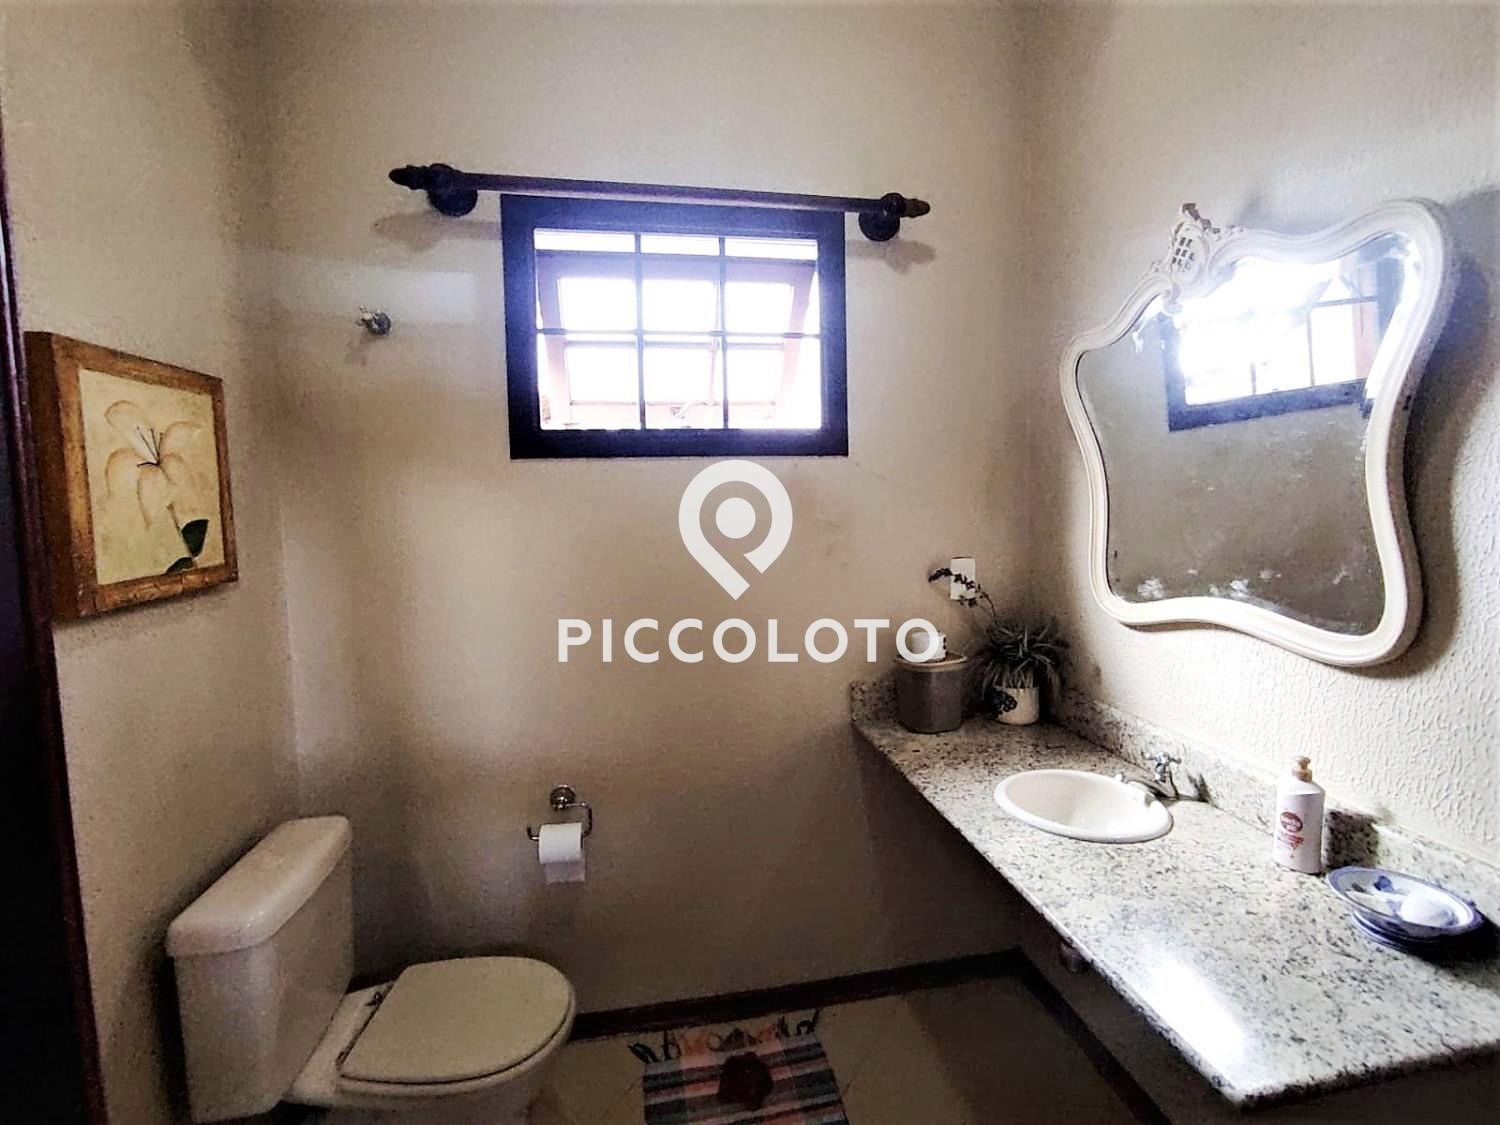 Piccoloto -Casa à venda no Chácara Primavera em Campinas